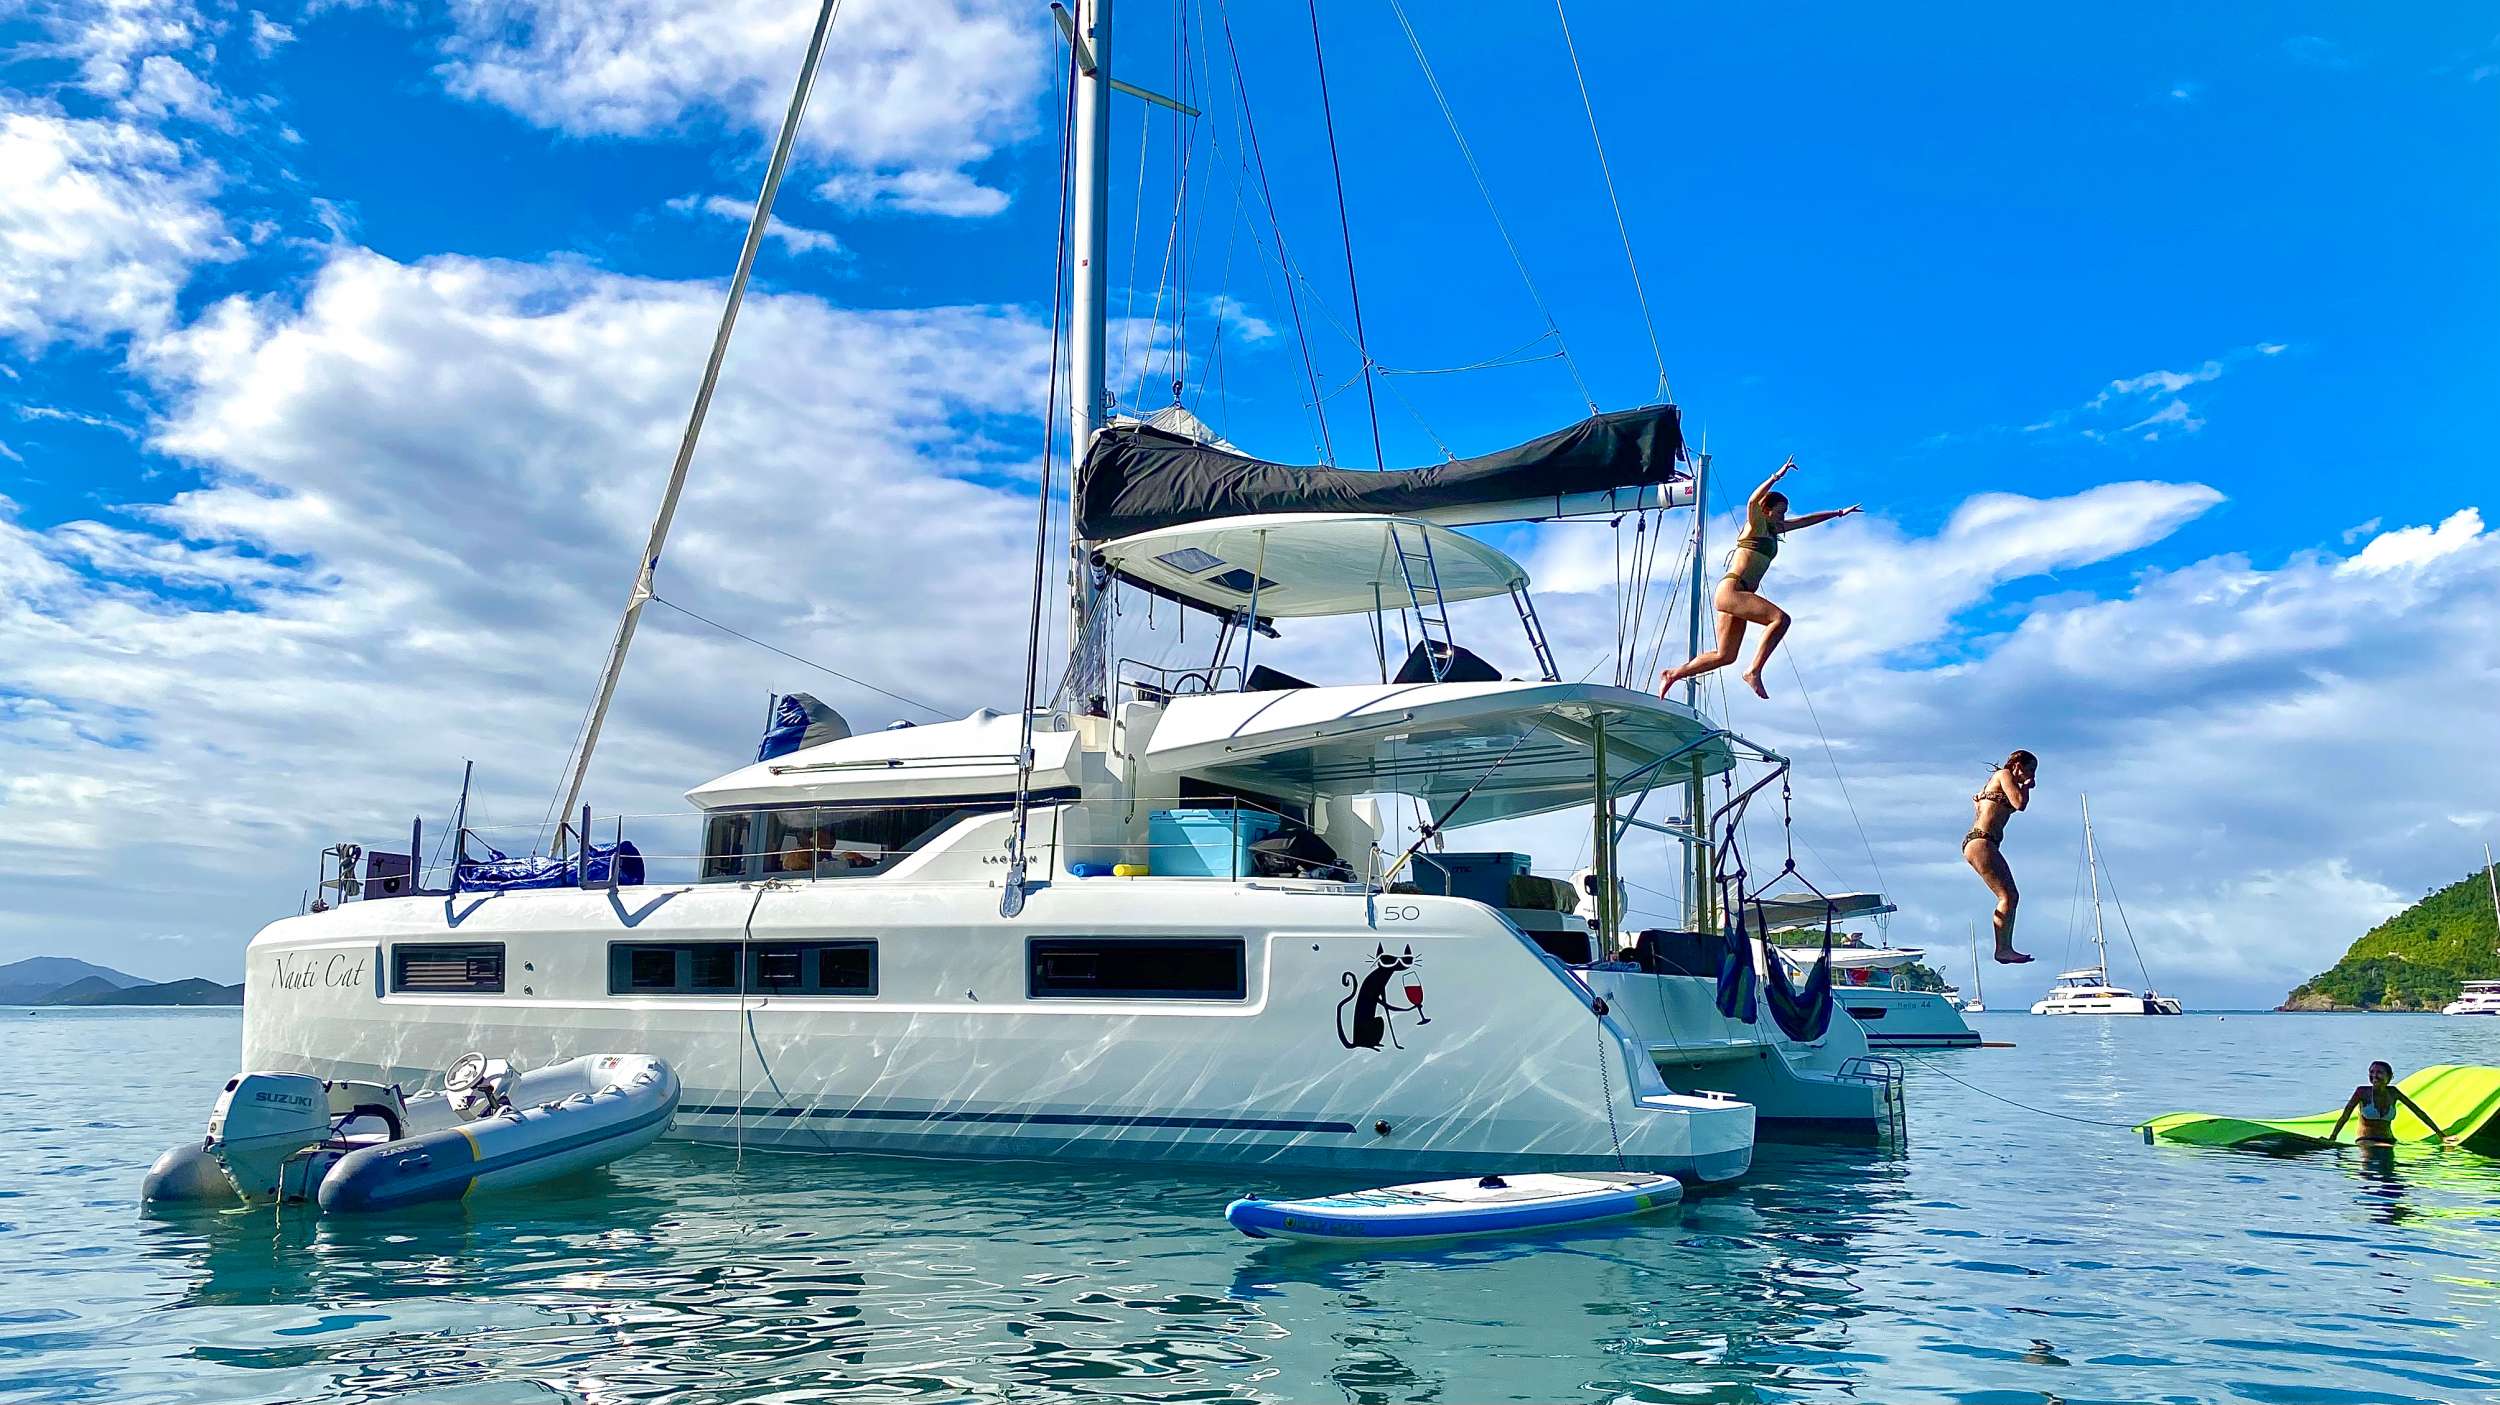 NAUTI CAT - Catamaran Charter Bahamas & Boat hire in Bahamas 1